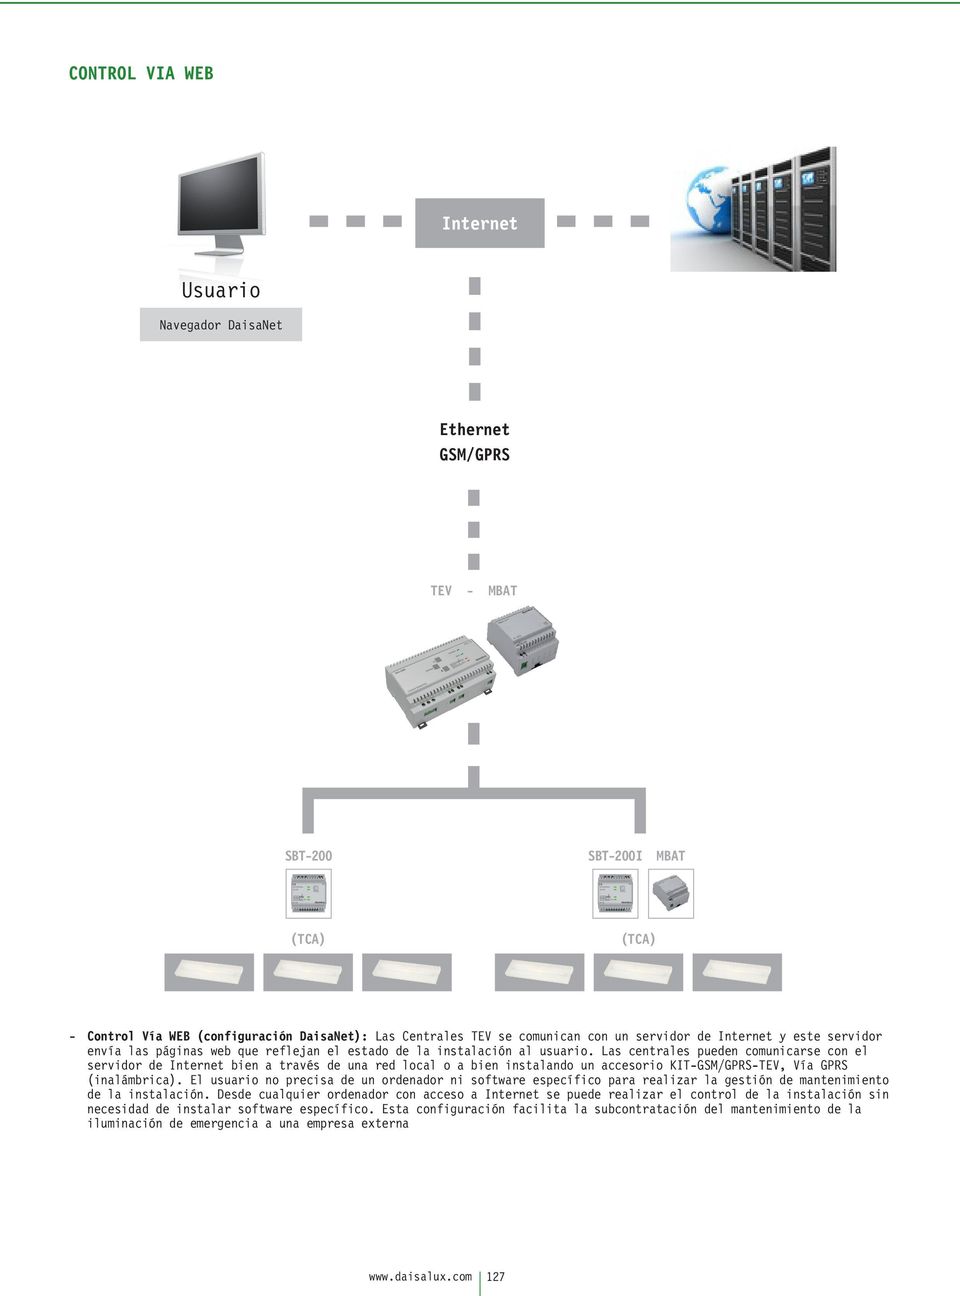 Las centrales pueden comunicarse con el servidor de Internet bien a través de una red local o a bien instalando un accesorio KIT-GSM/GPRS-TEV, Vía GPRS (inalámbrica).